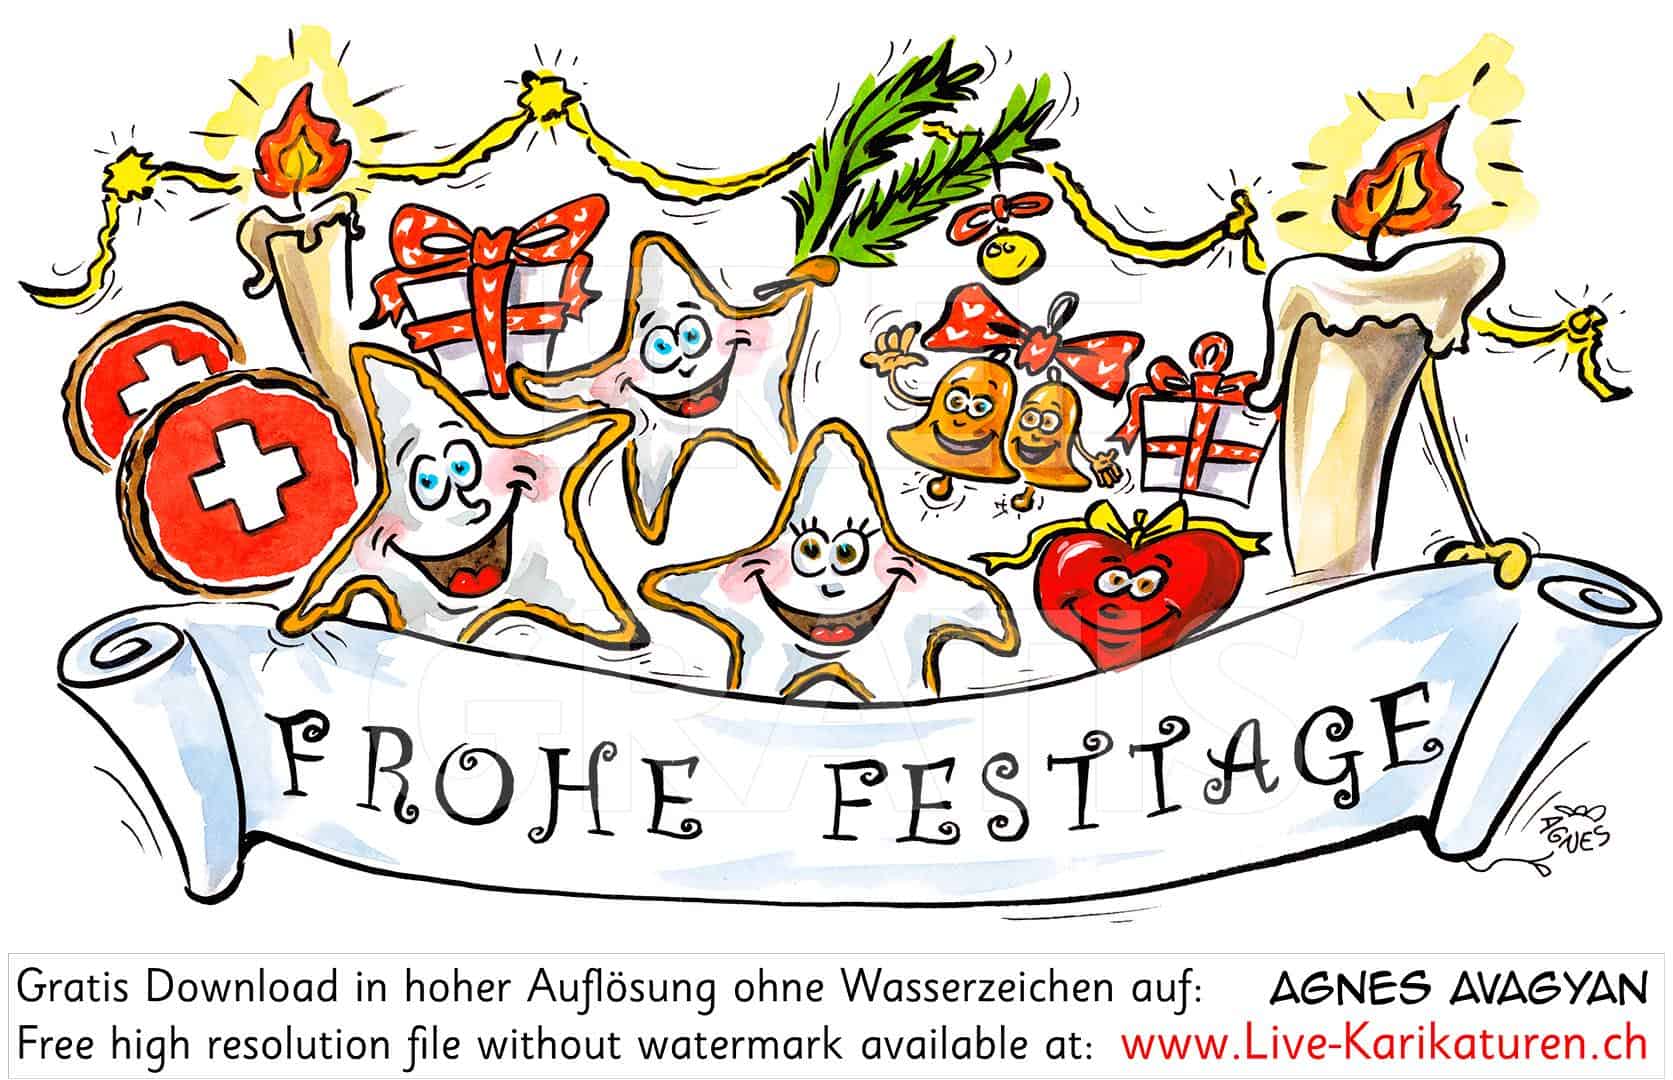 Frohe Festtage Festgruesse Weihnachten Guetzli Tannenzweig Kerze Geschenke Herz Lametta Schweiz Agnes Karikaturen , Clipart, Comic, Cartoon, Illustration, Zeichnung, gratis, free